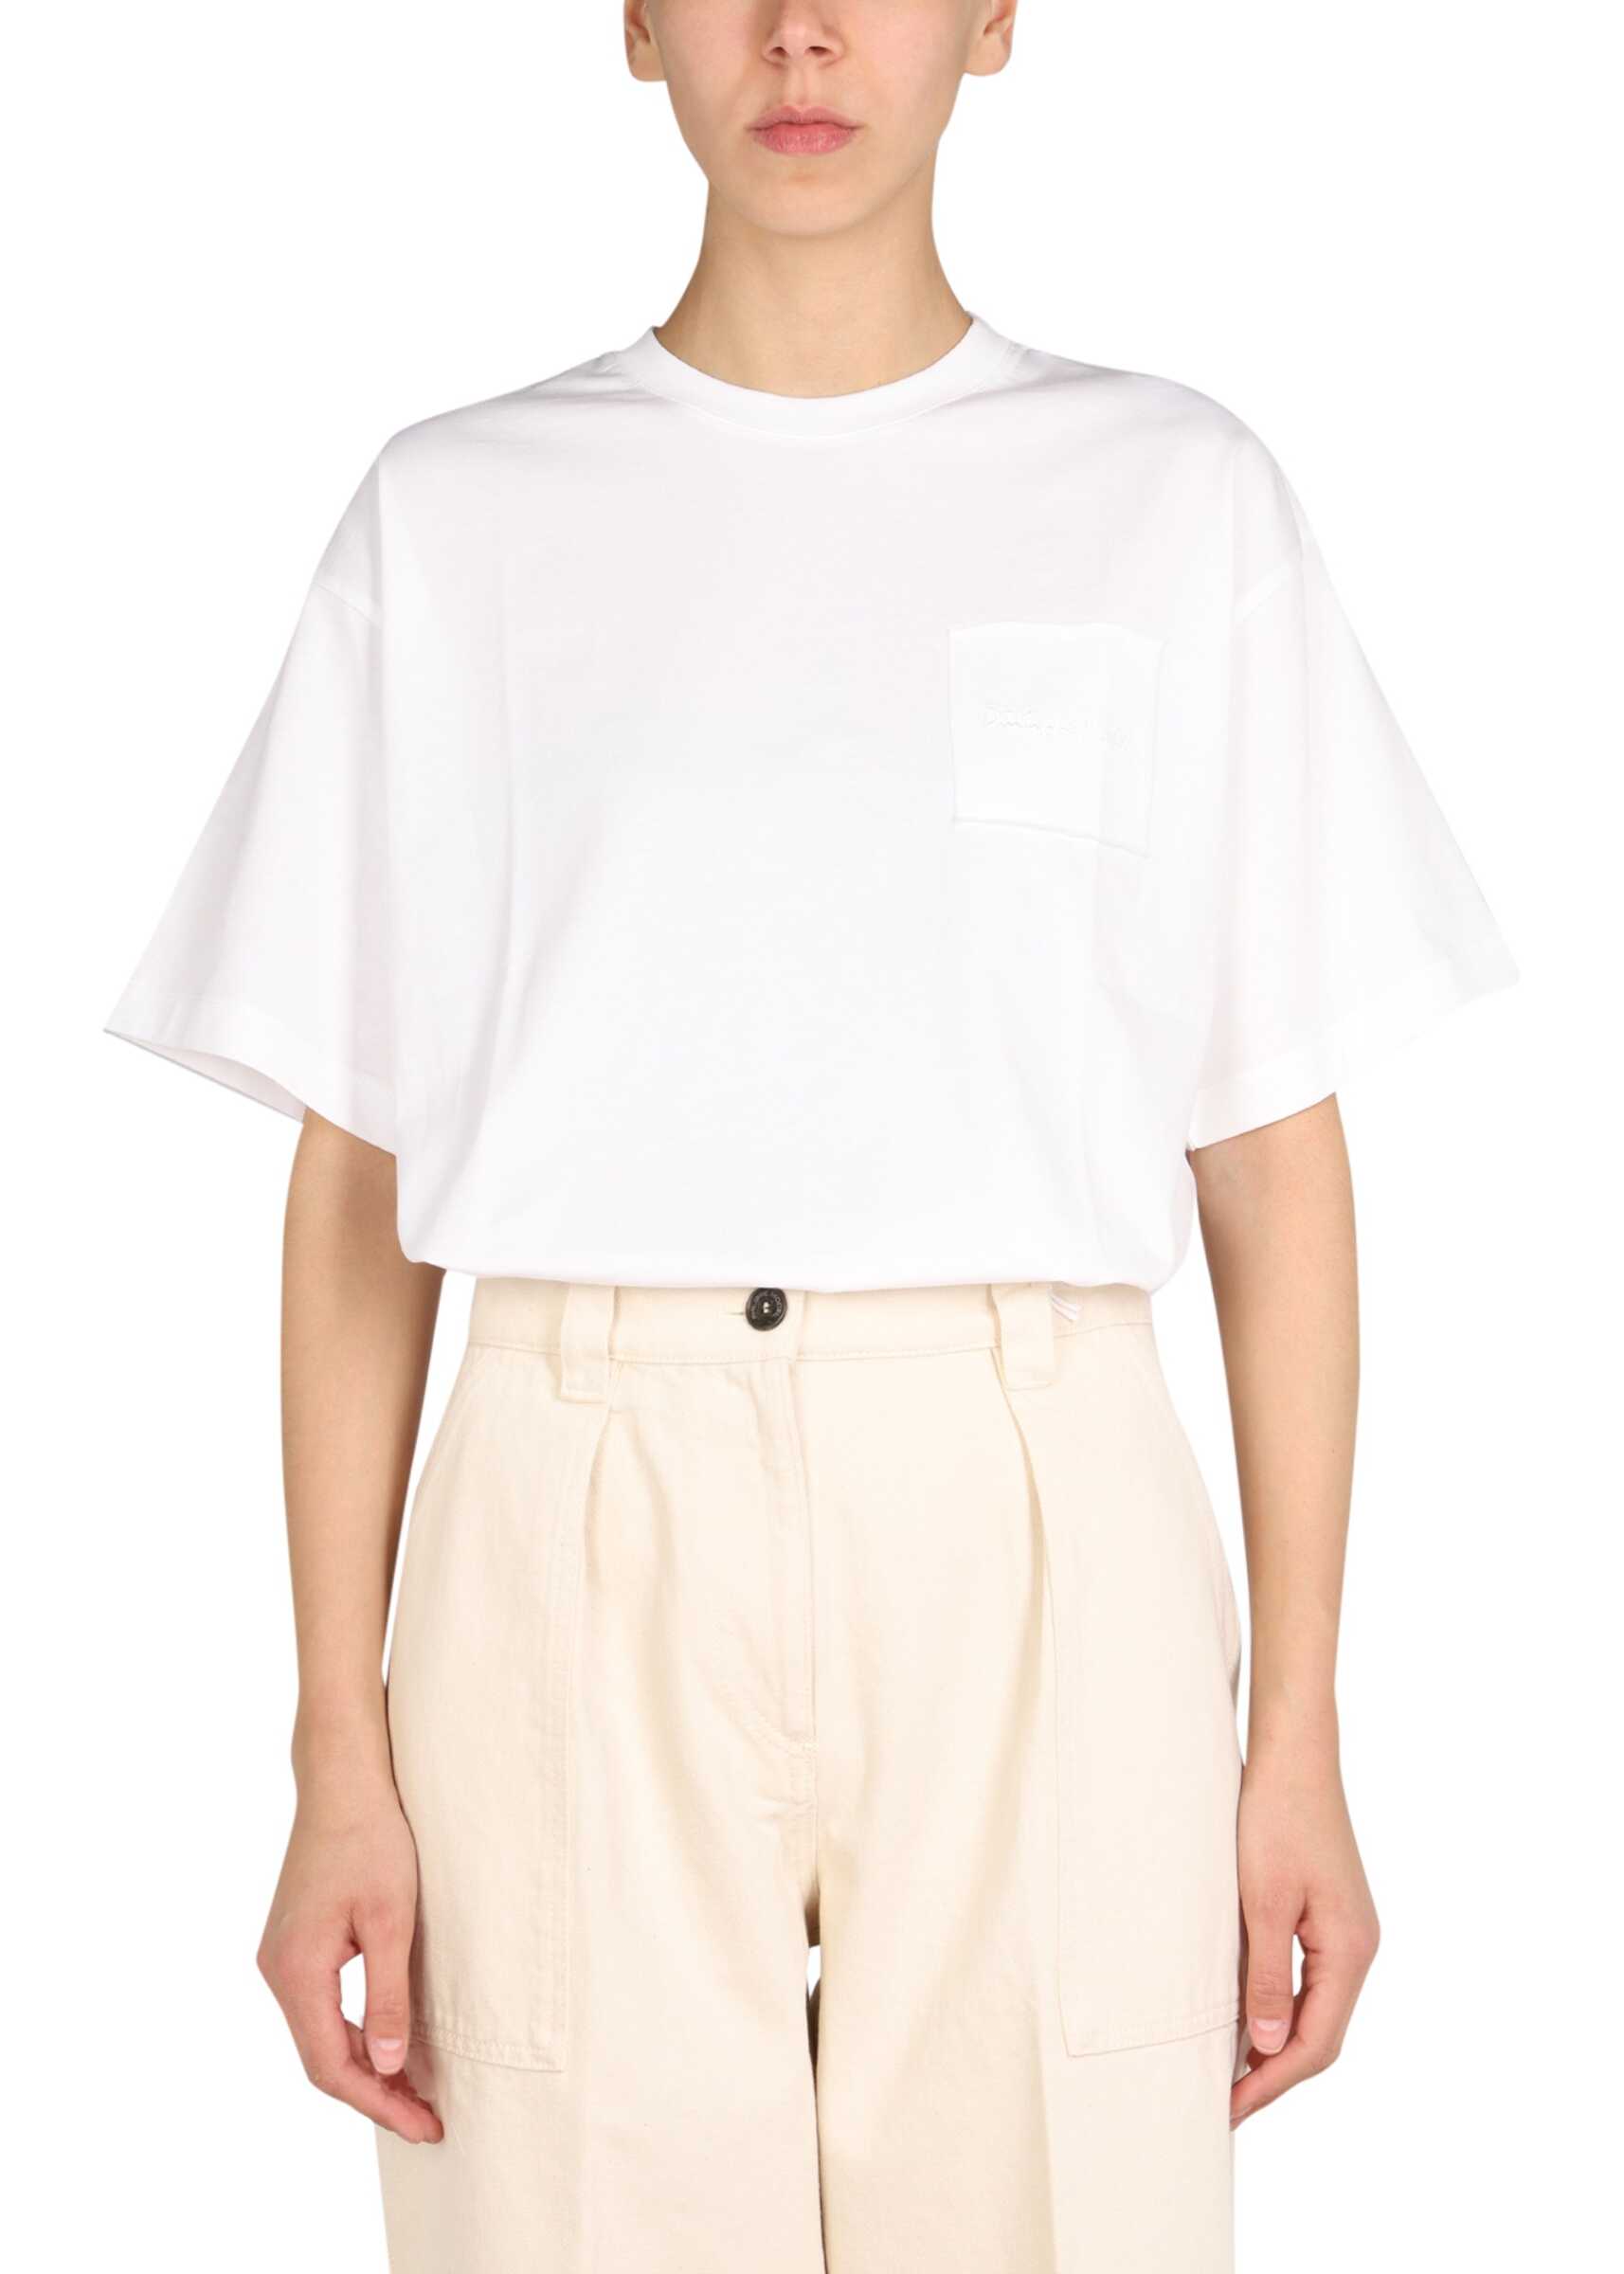 Philippe Model "Monique Bretonnes" T-Shirt WHITE